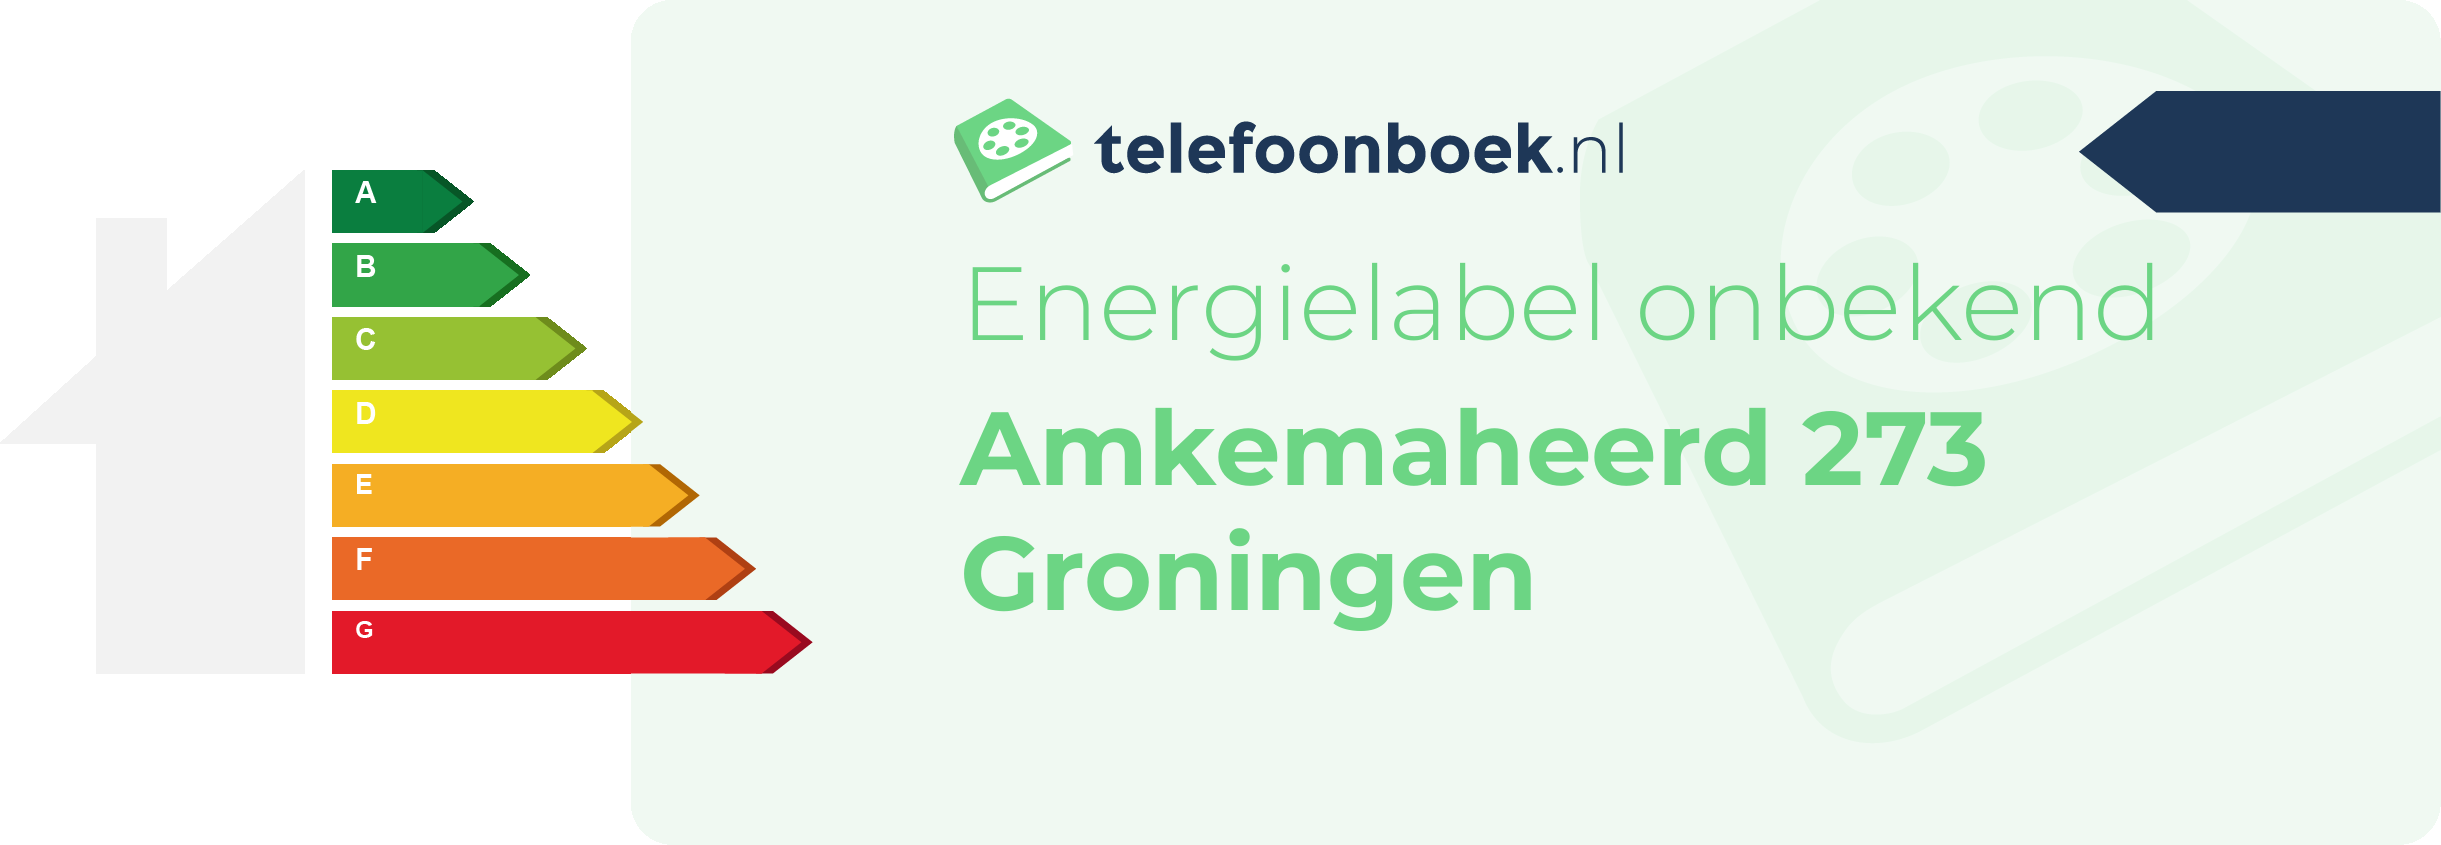 Energielabel Amkemaheerd 273 Groningen